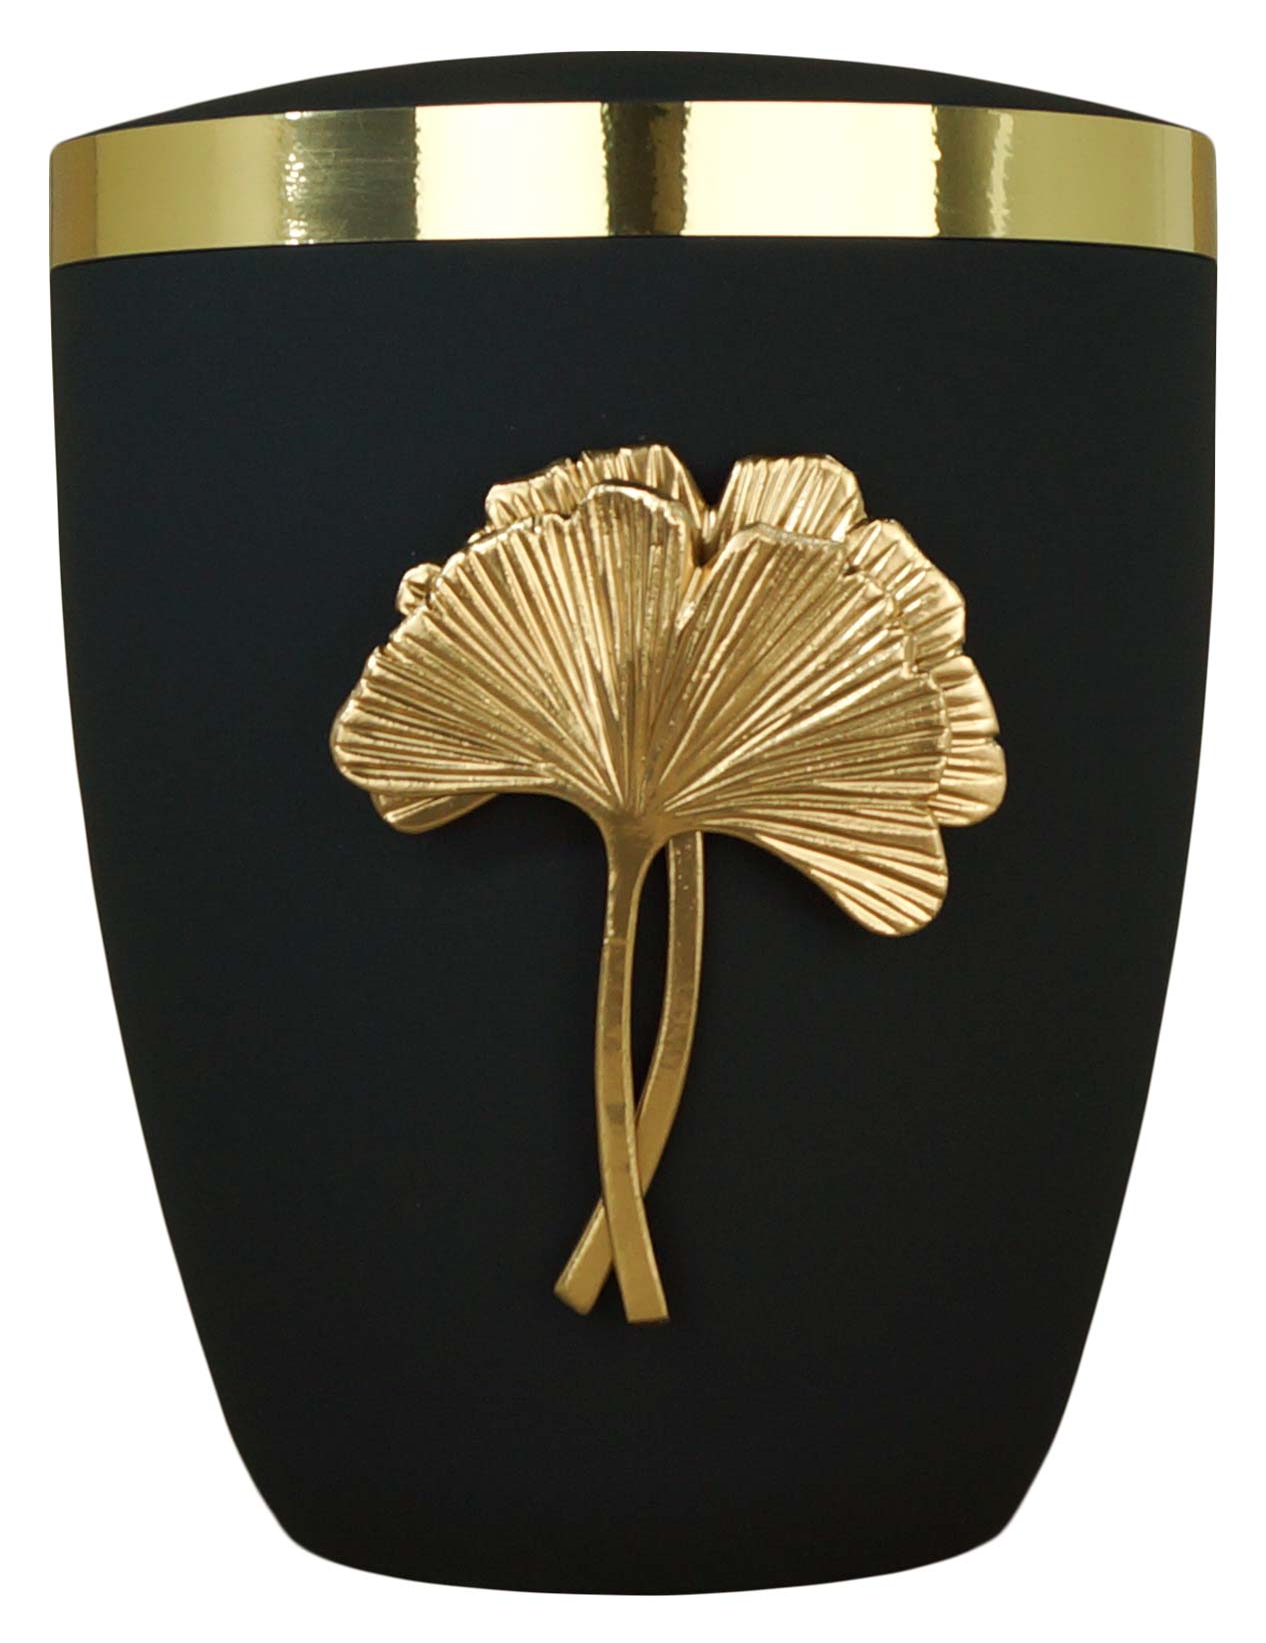 Flüssigholzurne schwarz-matt, Design "Ginkgo" in gold, Goldband